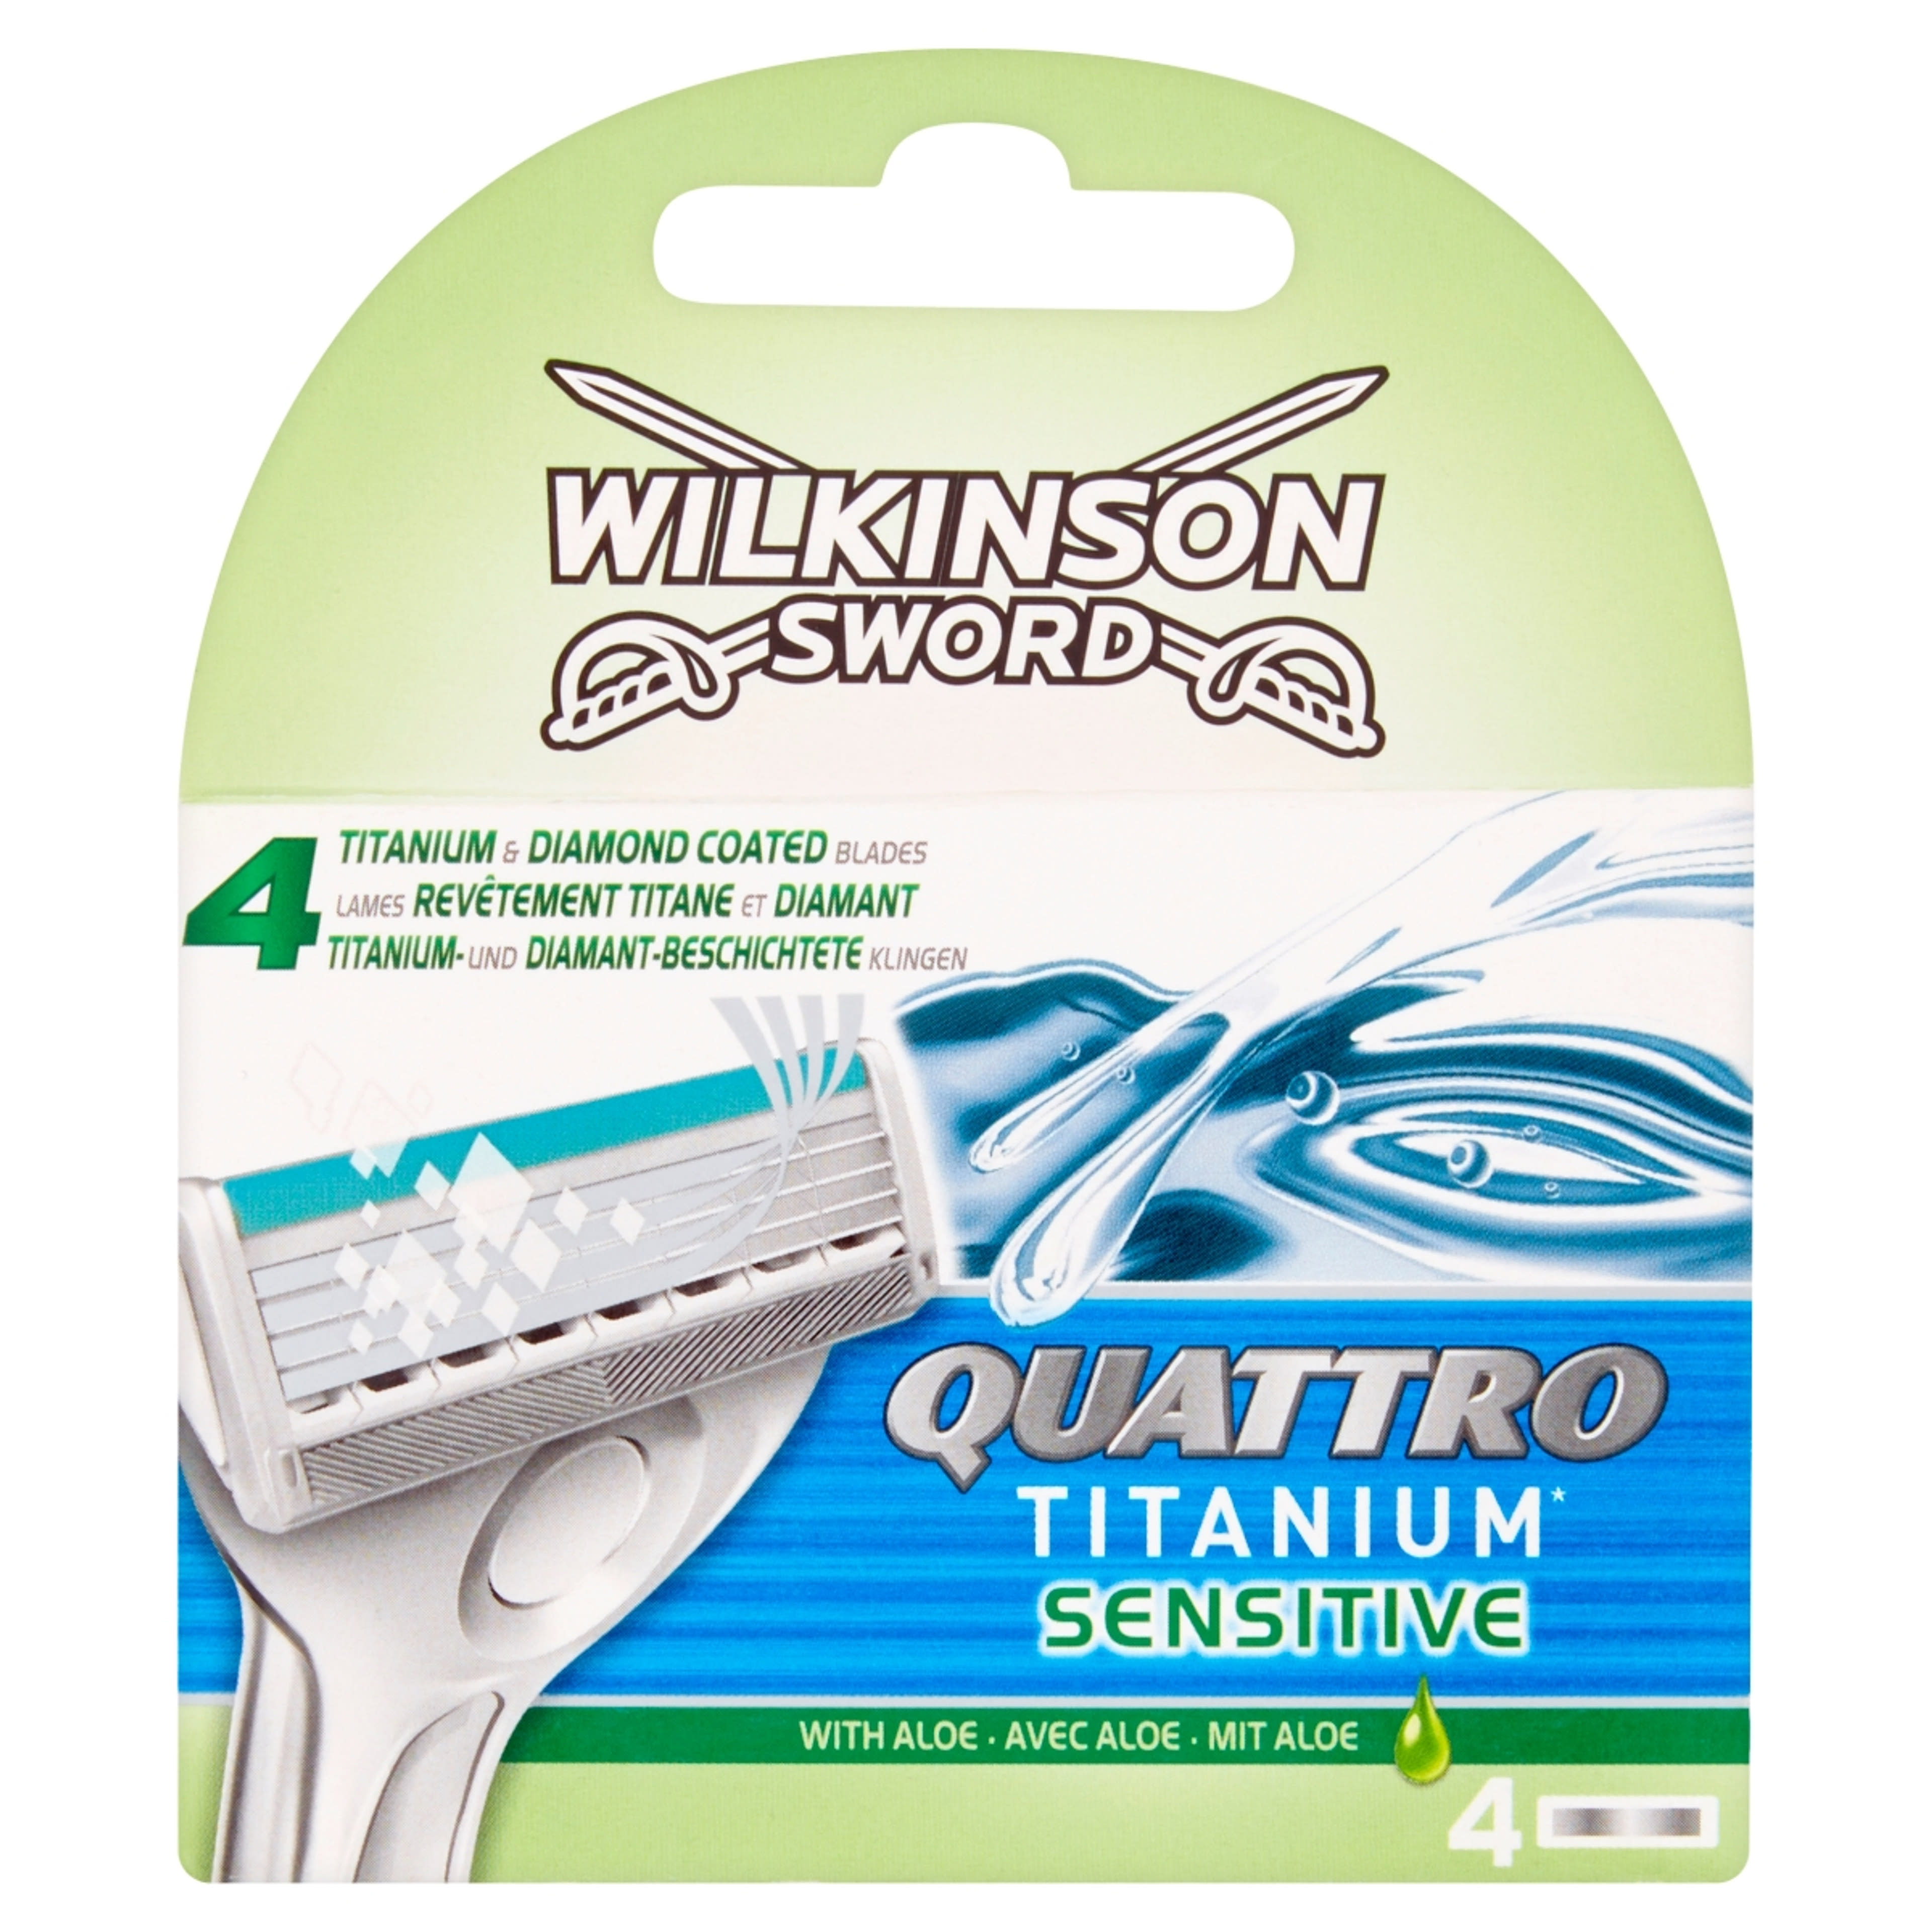 Wilkinson Sword Quattro Titanium Sensitive borotvabetét - 4 db